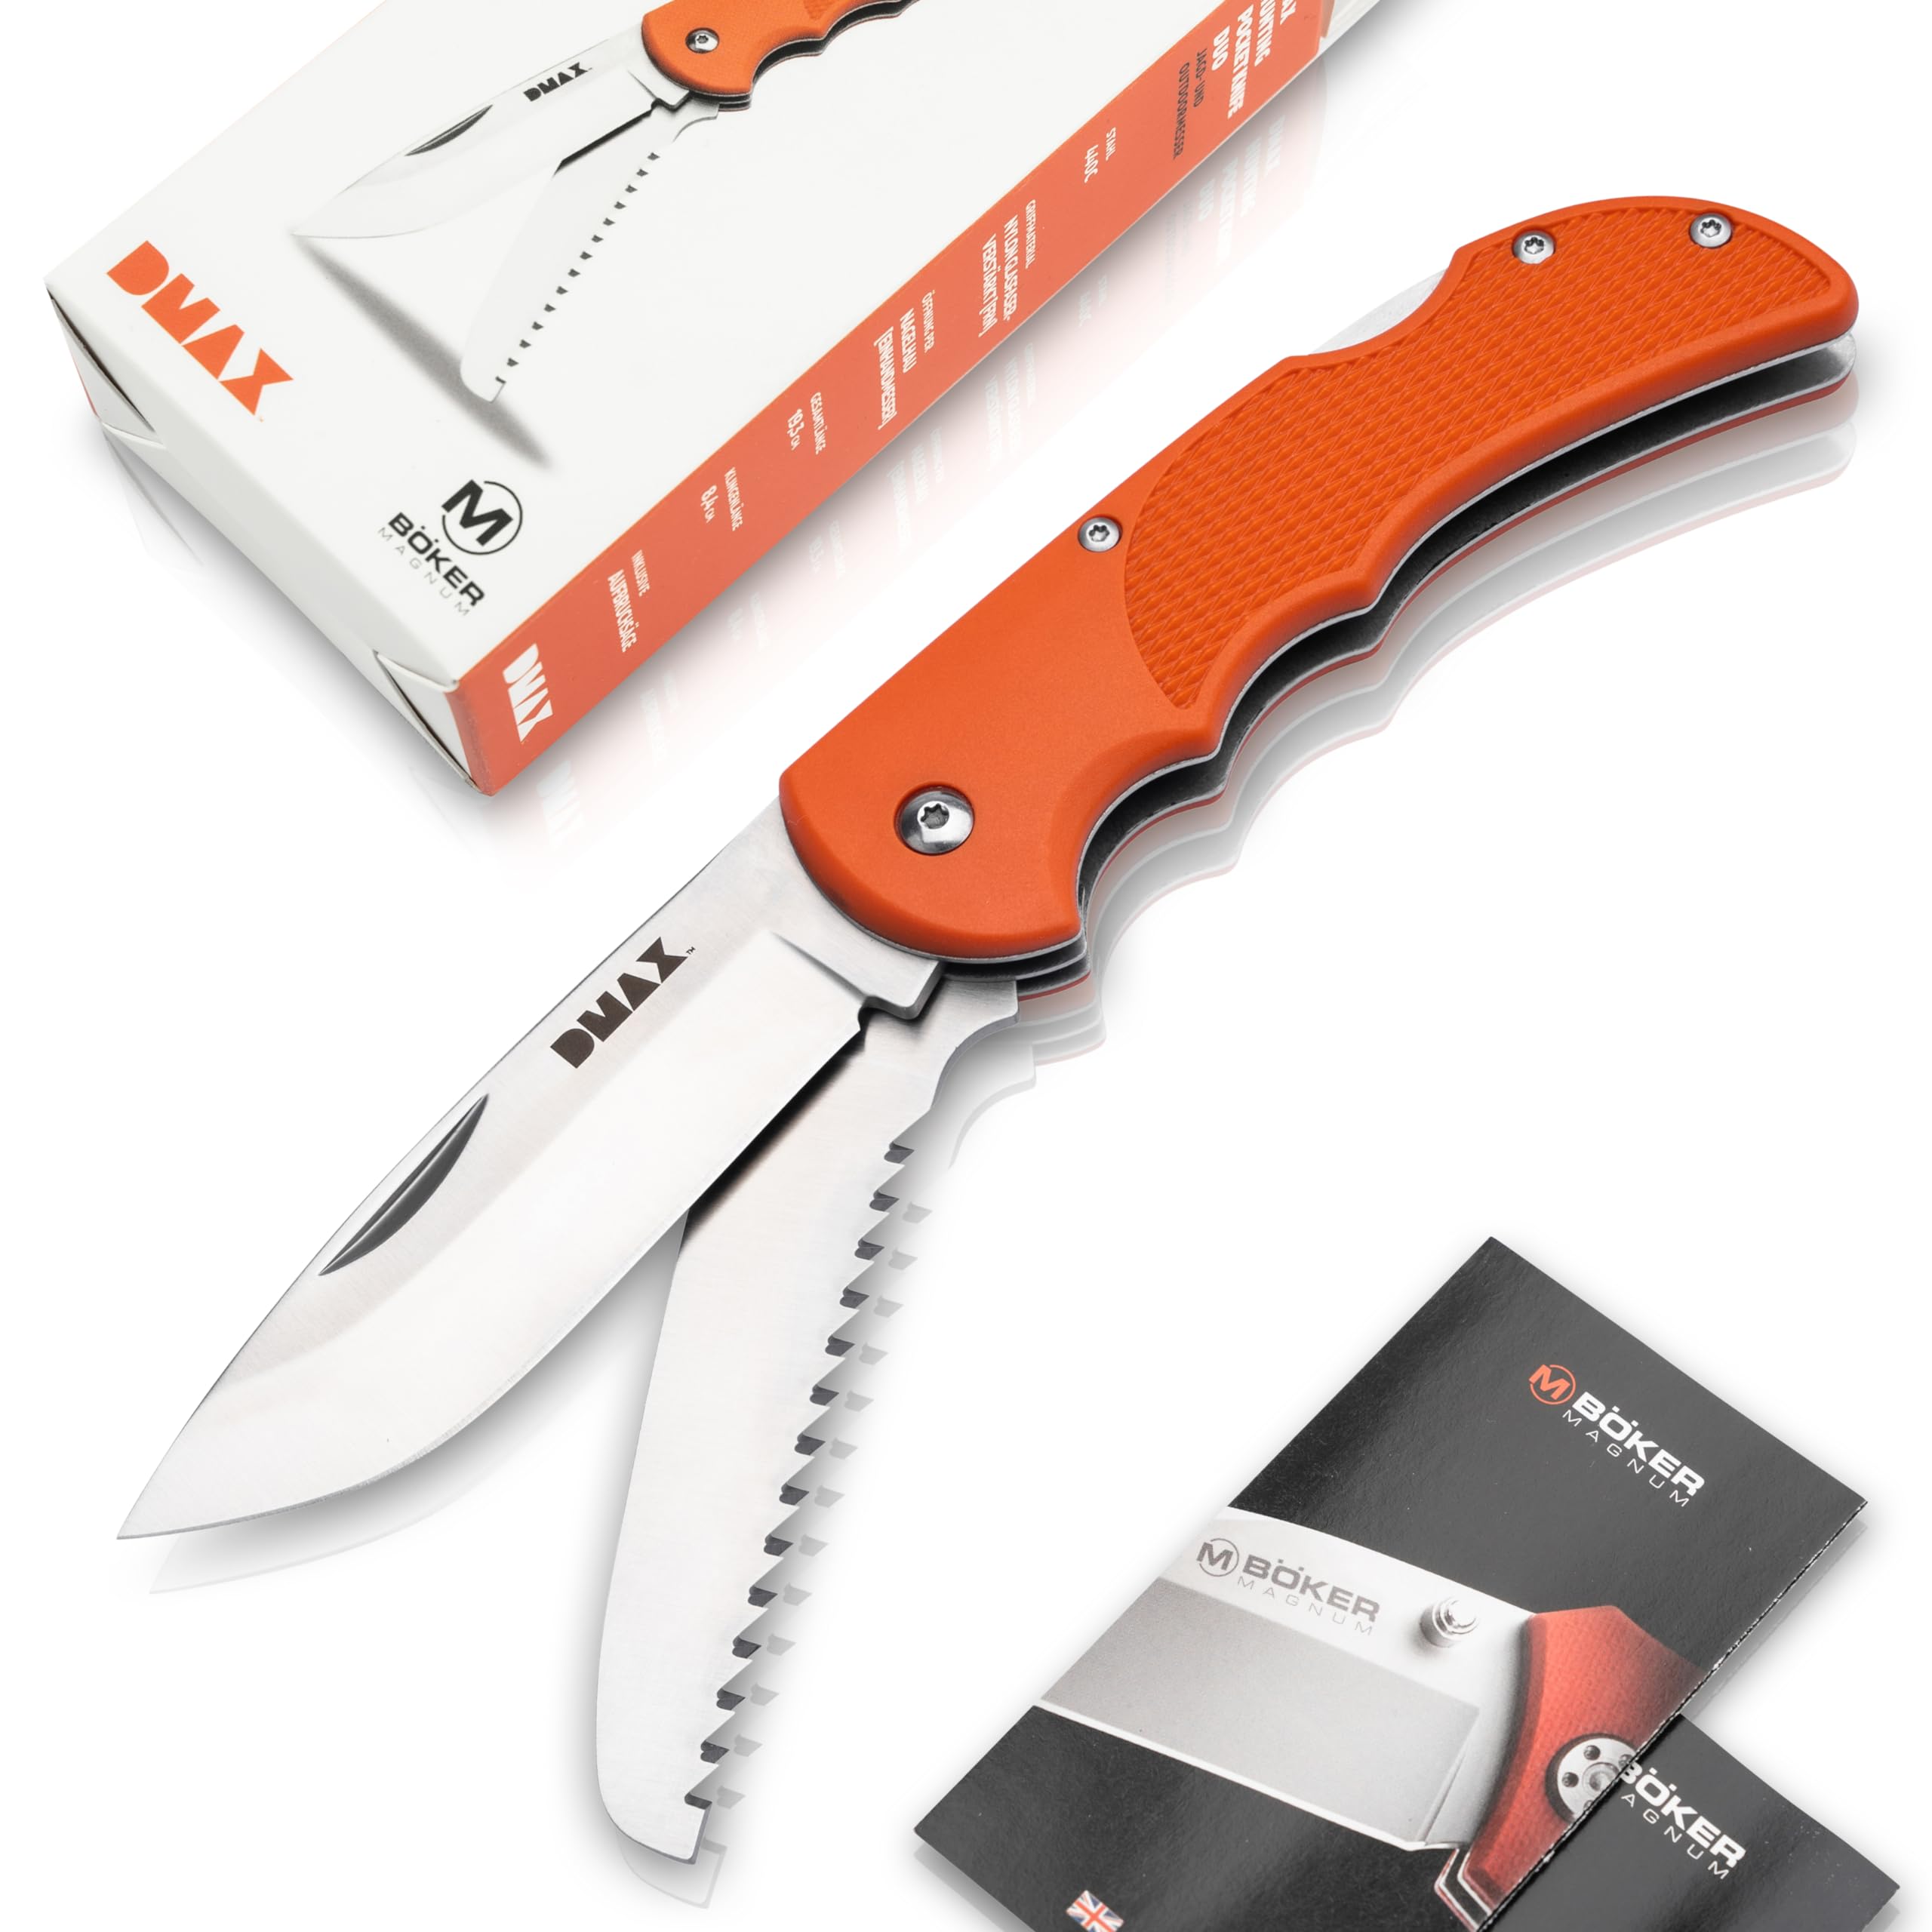 DMAX® Hunting Pocket Knife Duo - klappbares Jagdmesser mit Säge - Jagd Taschenmesser mit Kunststoff-Griff orange - Zweihand Backlock Klappmesser mit Gürtel-Tasche - coole Geschenk-Idee für Männer